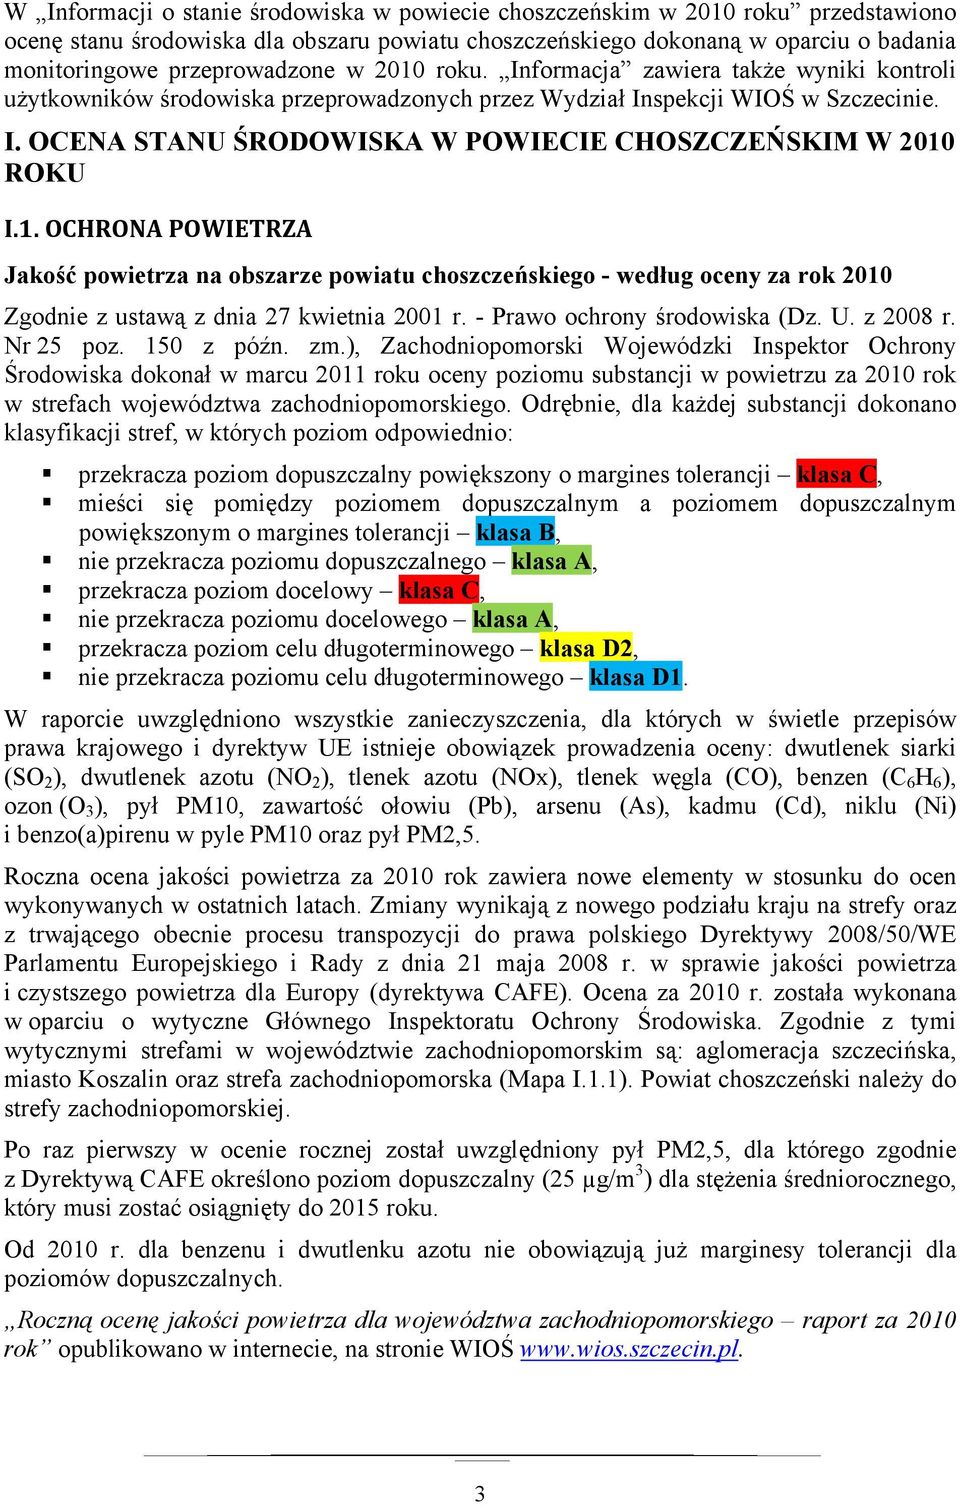 1. OCHRONA POWIETRZA Jakość powietrza na obszarze powiatu choszczeńskiego - według oceny za rok 2010 Zgodnie z ustawą z dnia 27 kwietnia 2001 r. - Prawo ochrony środowiska (Dz. U. z 2008 r. Nr 25 poz.